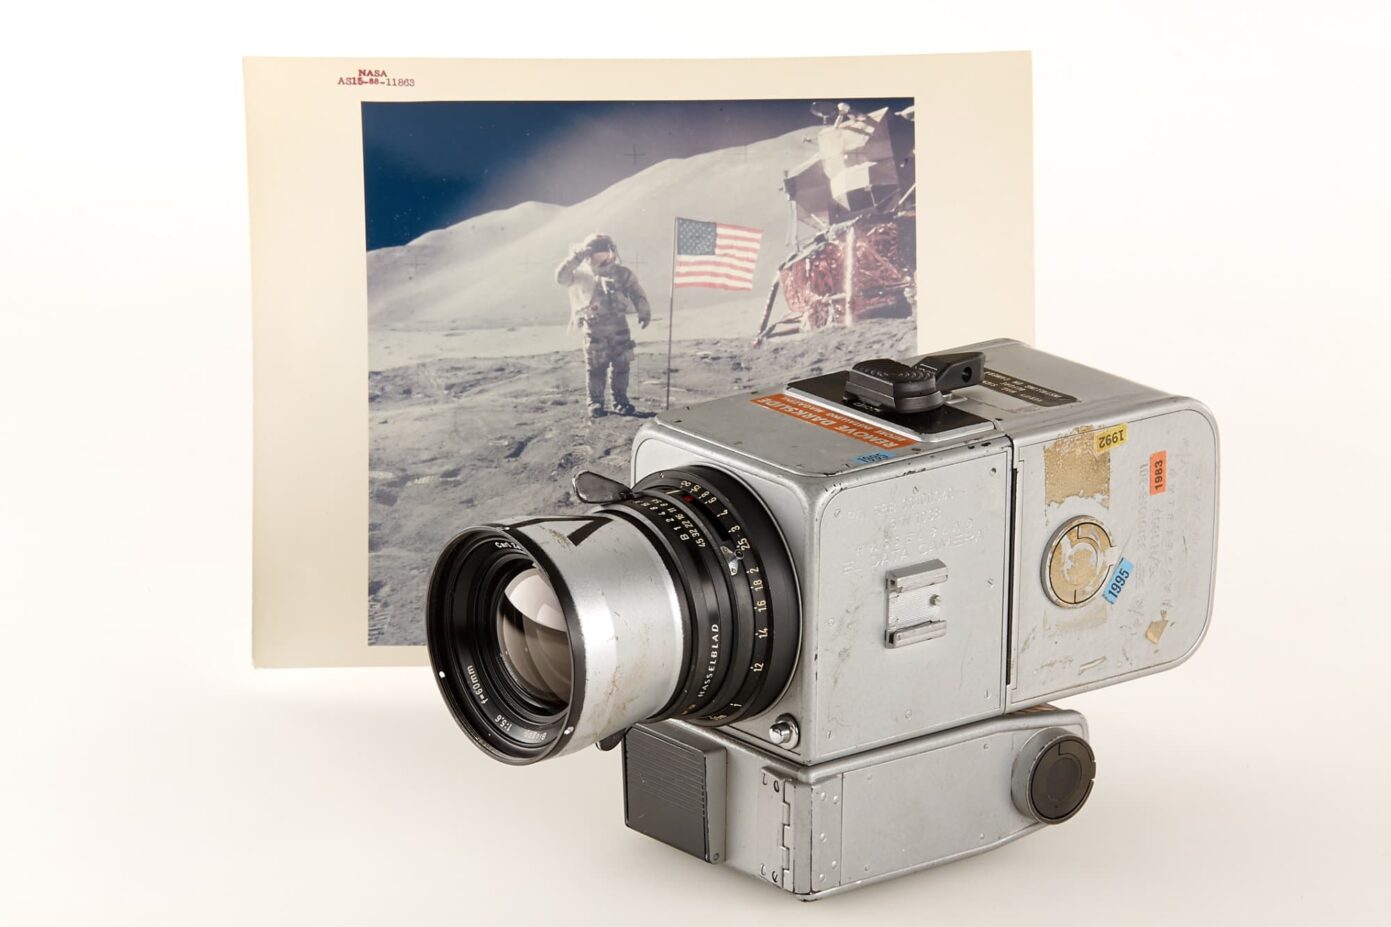 Hasselblad - Apollo 15 - NASA Polaroid